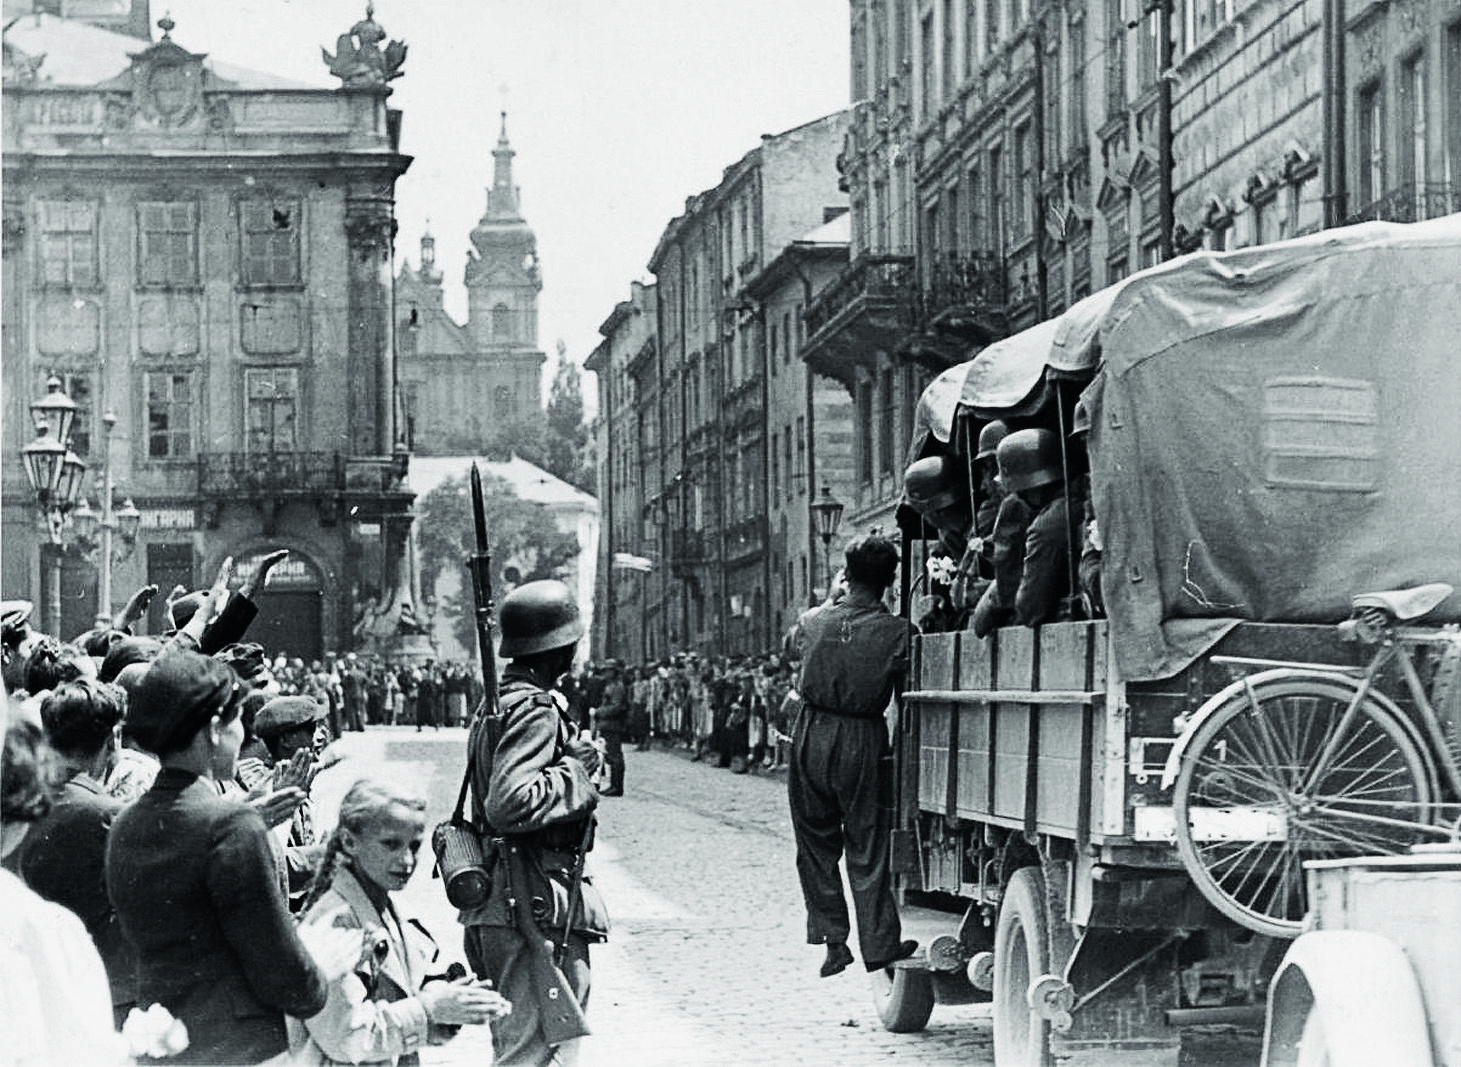 Жители Львова приветствуют автоколонну немецких войск на улице города, июнь - июль 1941.jpg